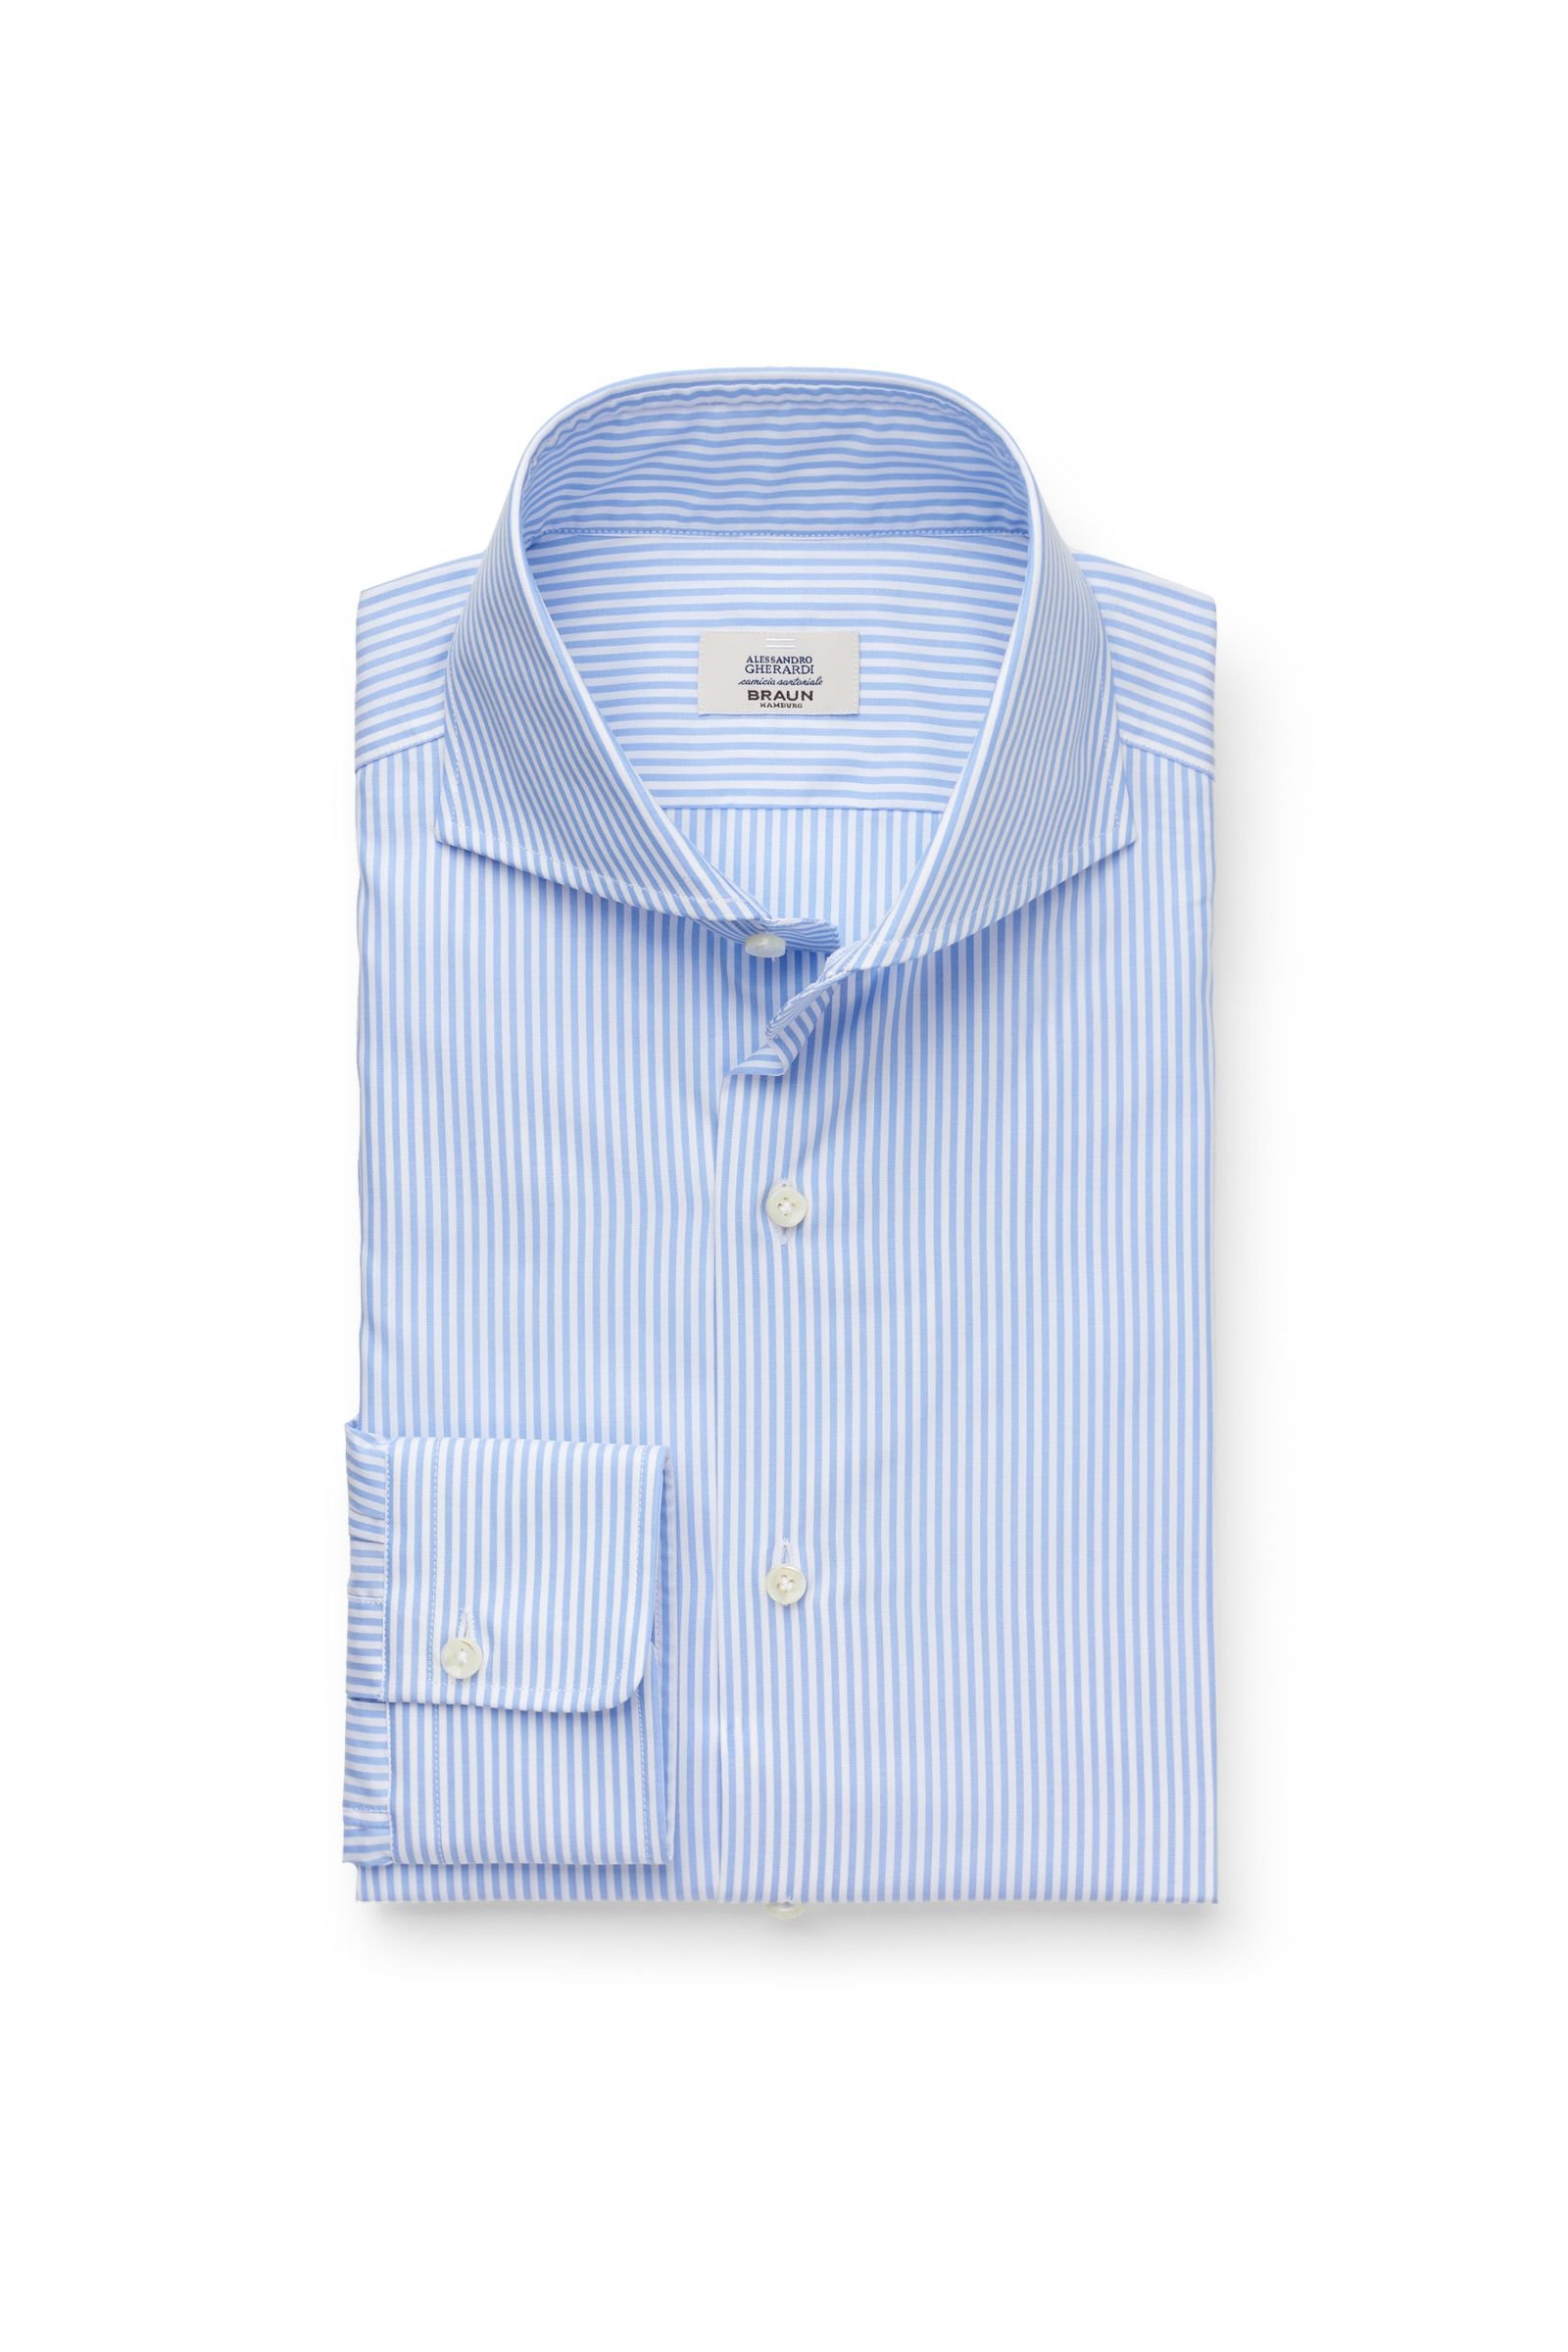 Business shirt shark collar light blue striped